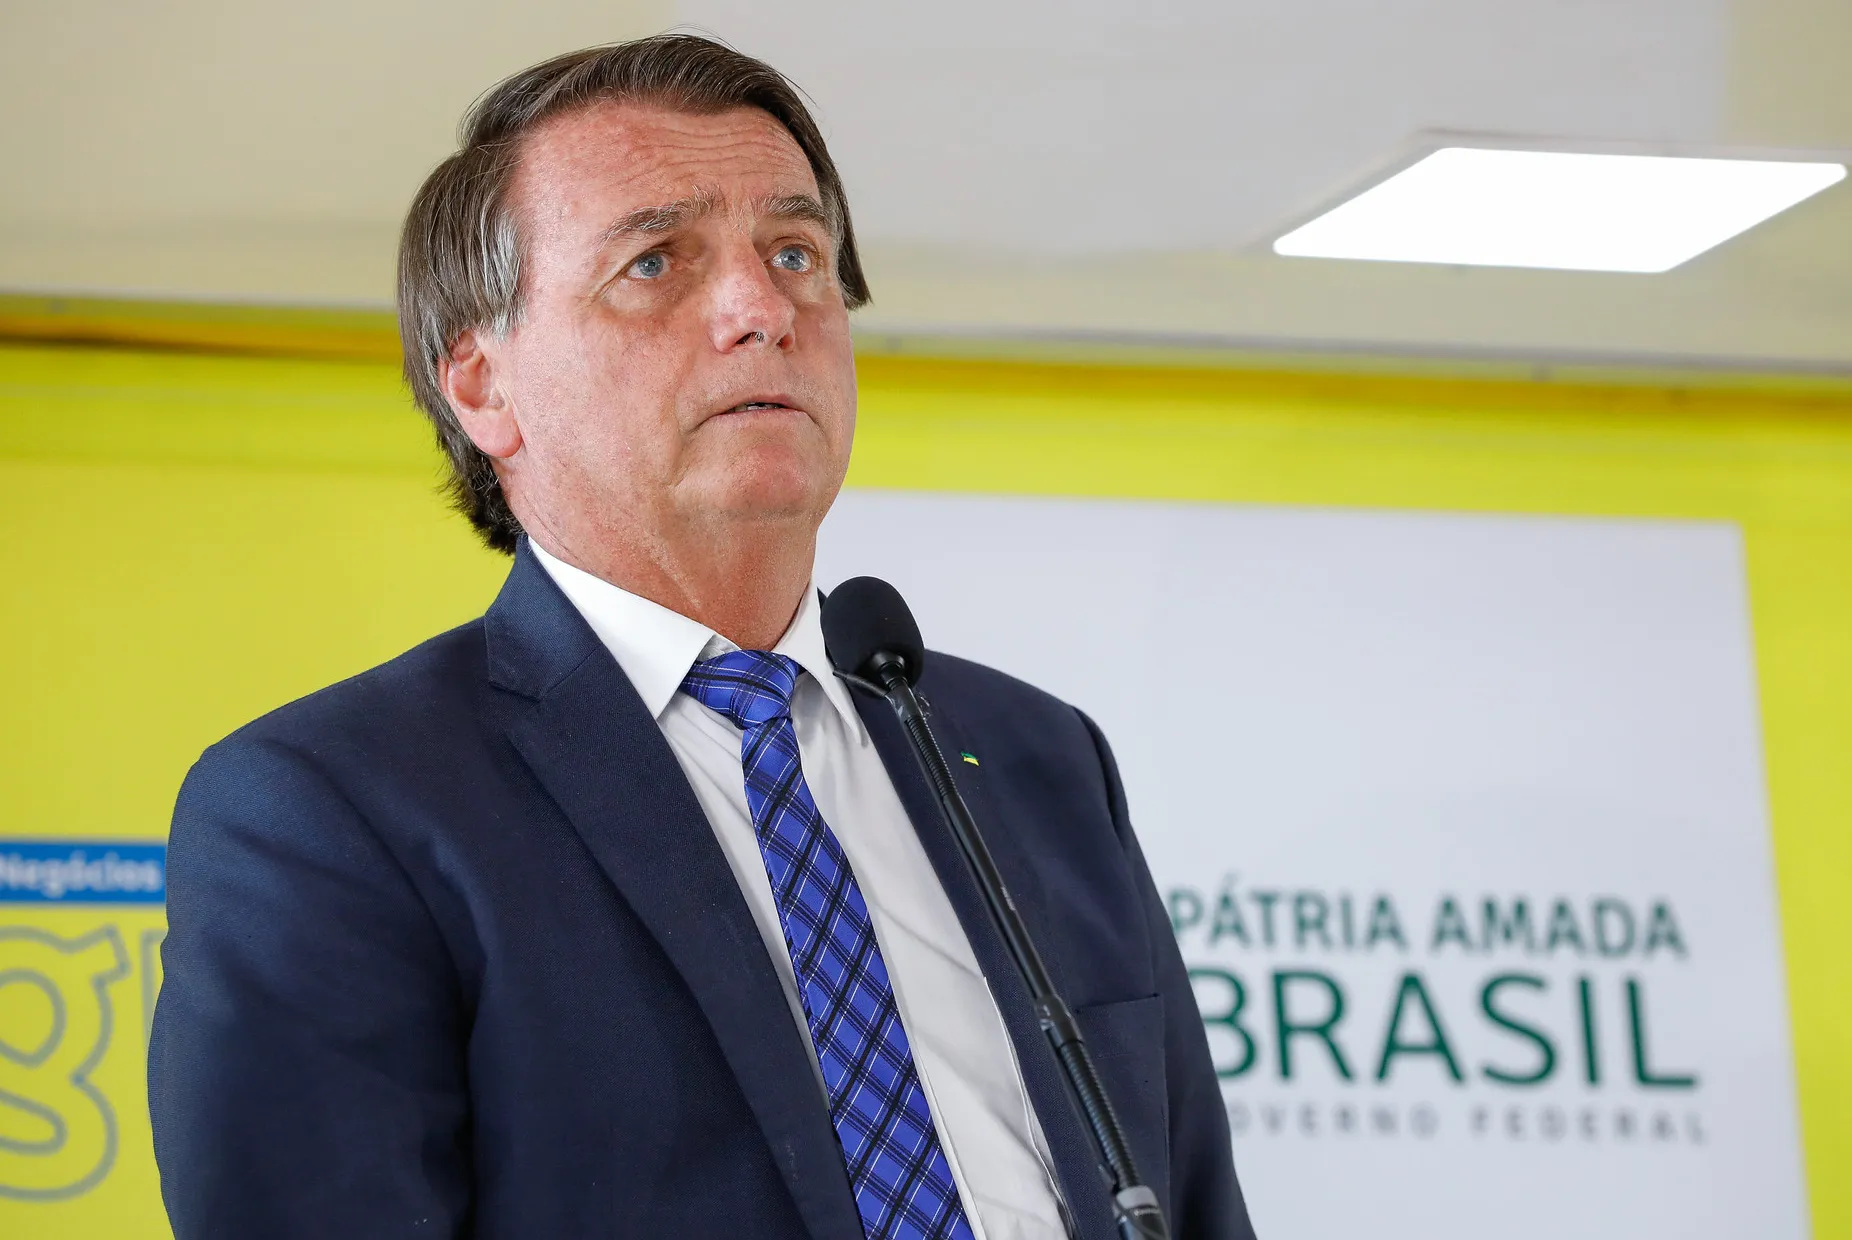 Bolsonarou publicou nas redes sociais a cópia do inquérito e distorcer informações para alegar supostas fraudes nas eleições